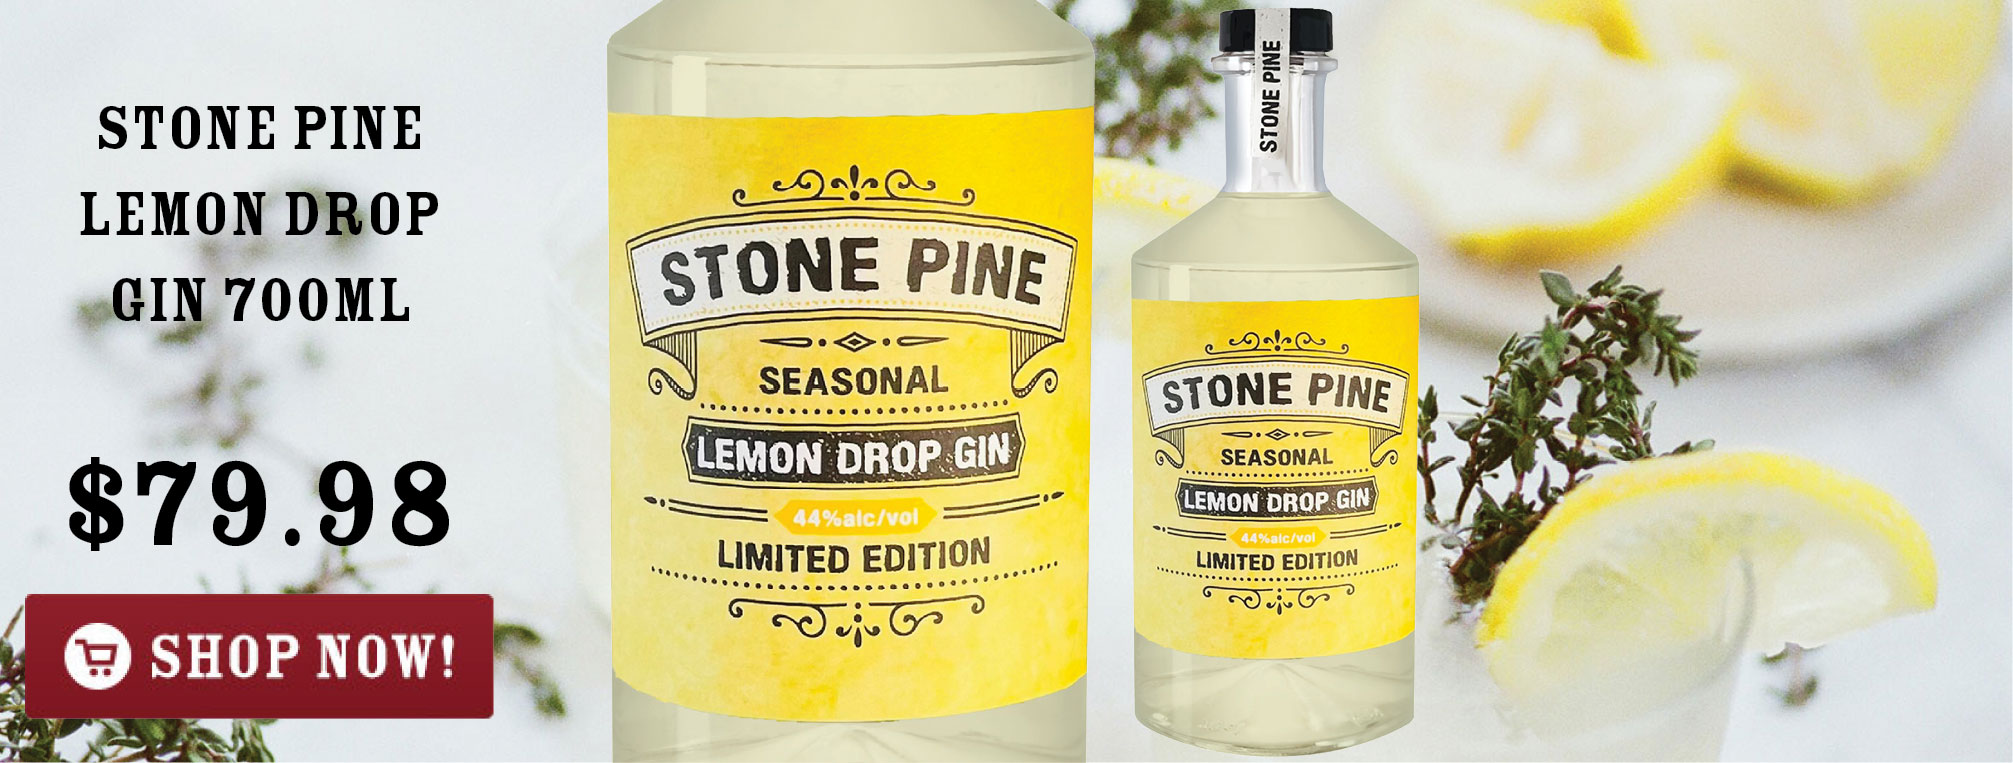 Stone Pine Lemon Drop Gin